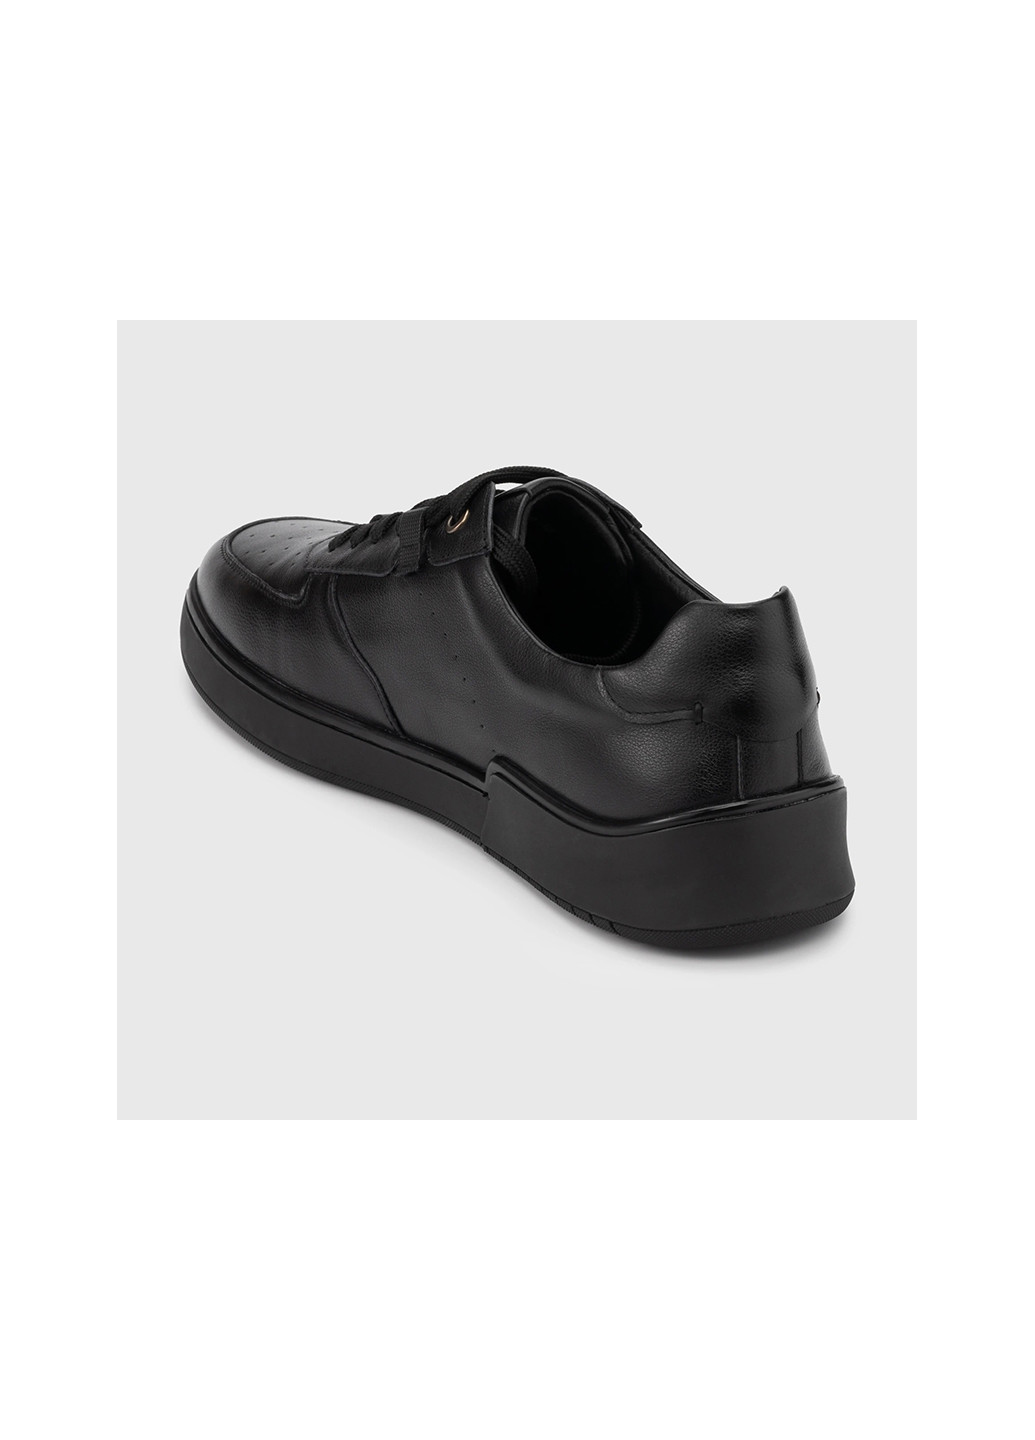 Черные повседневные туфли Stepln